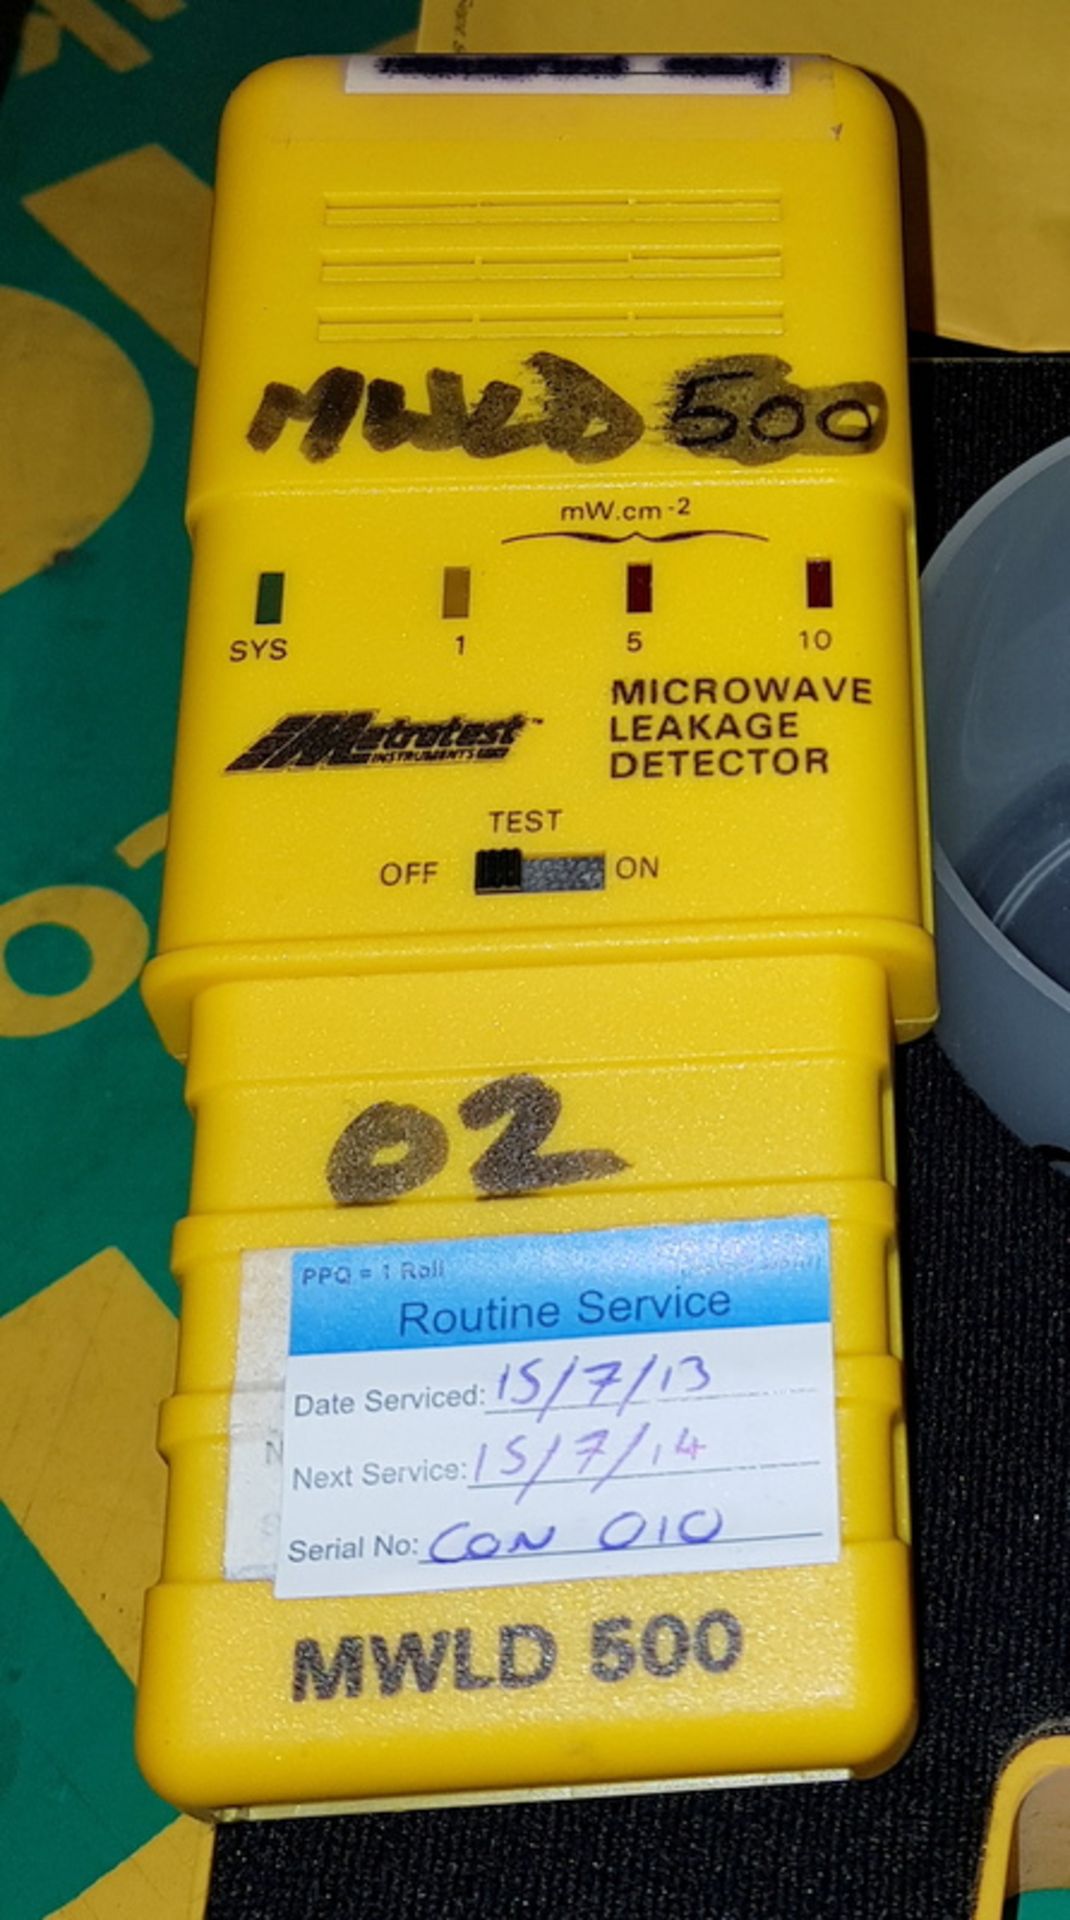 Metrowave MWLD 500 Microwave Leakage Detector - Image 2 of 4